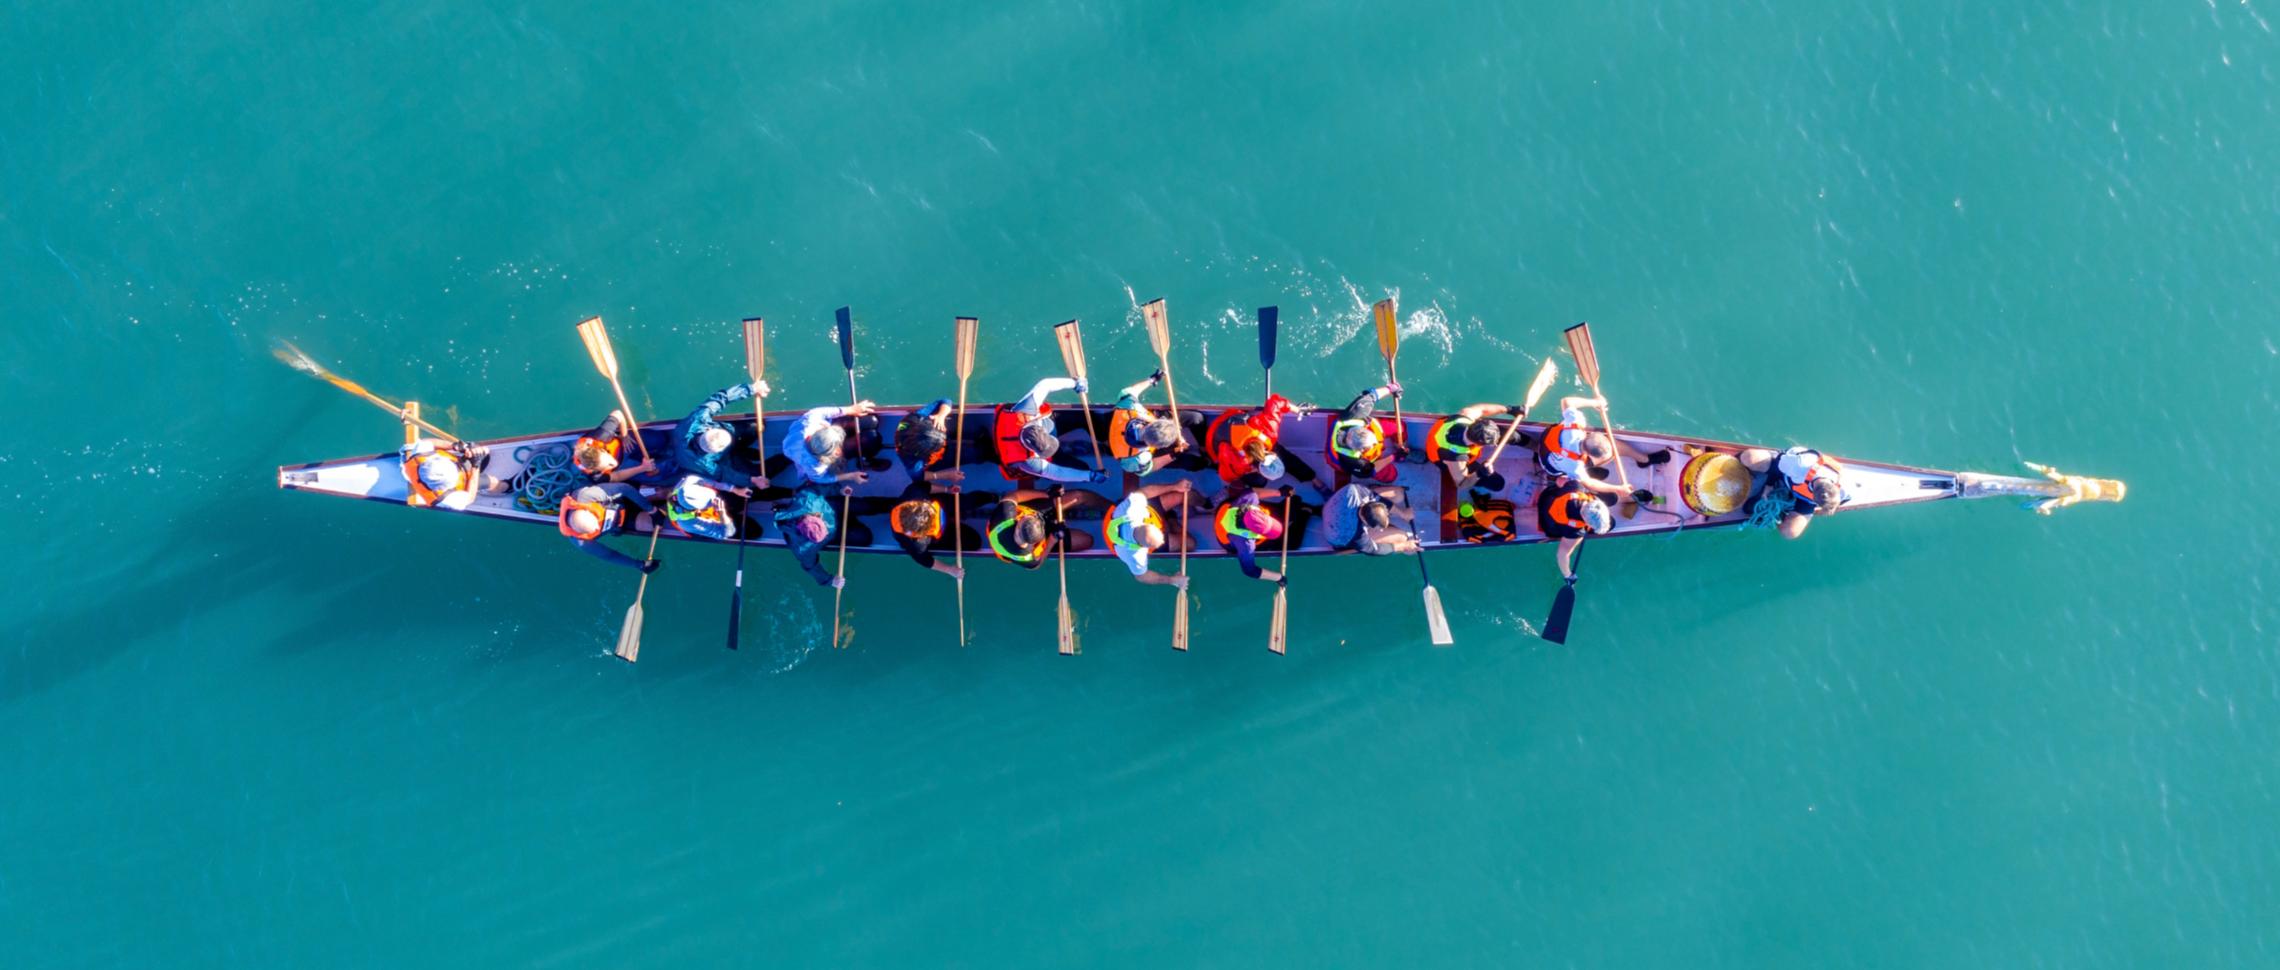 Teamarbeit - gemeinsam in einem Boot